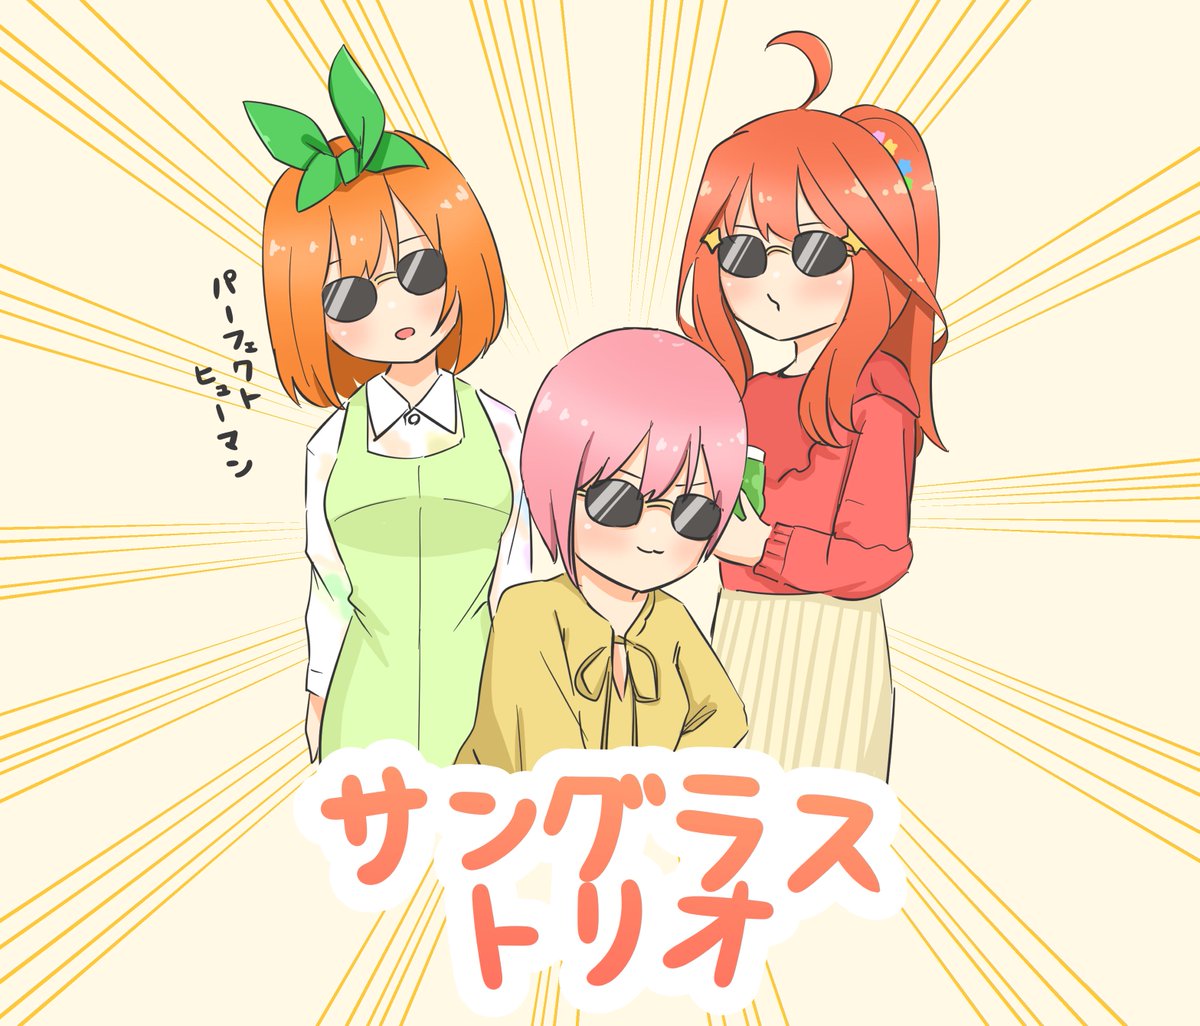 nakano ichika ,nakano itsuki ,nakano yotsuba green ribbon multiple girls ribbon shirt pink hair sunglasses ahoge  illustration images